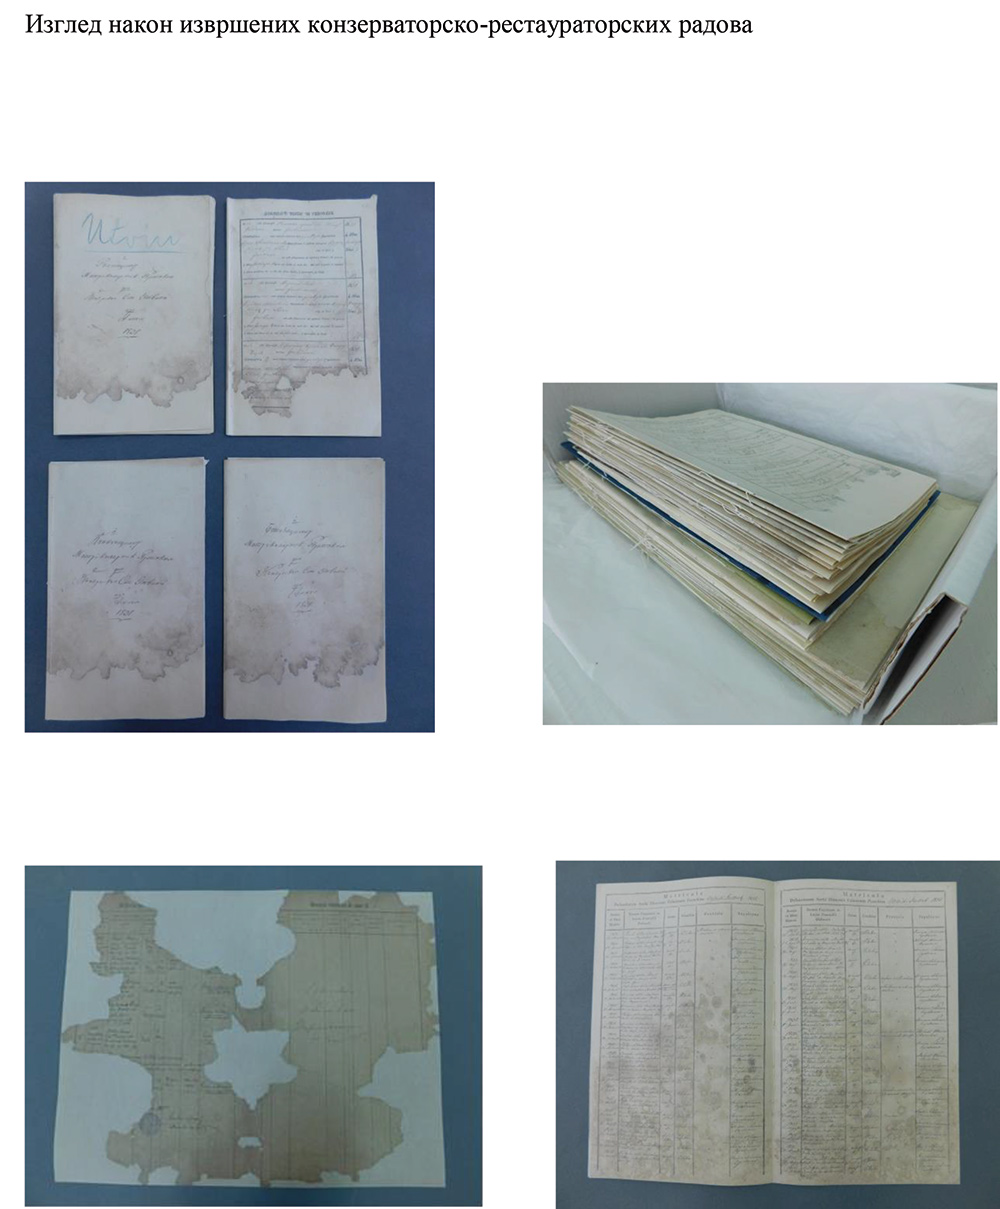 Конзерваторско-рестаураторски радови изведени на документима из Збирке матичних књига Војводине